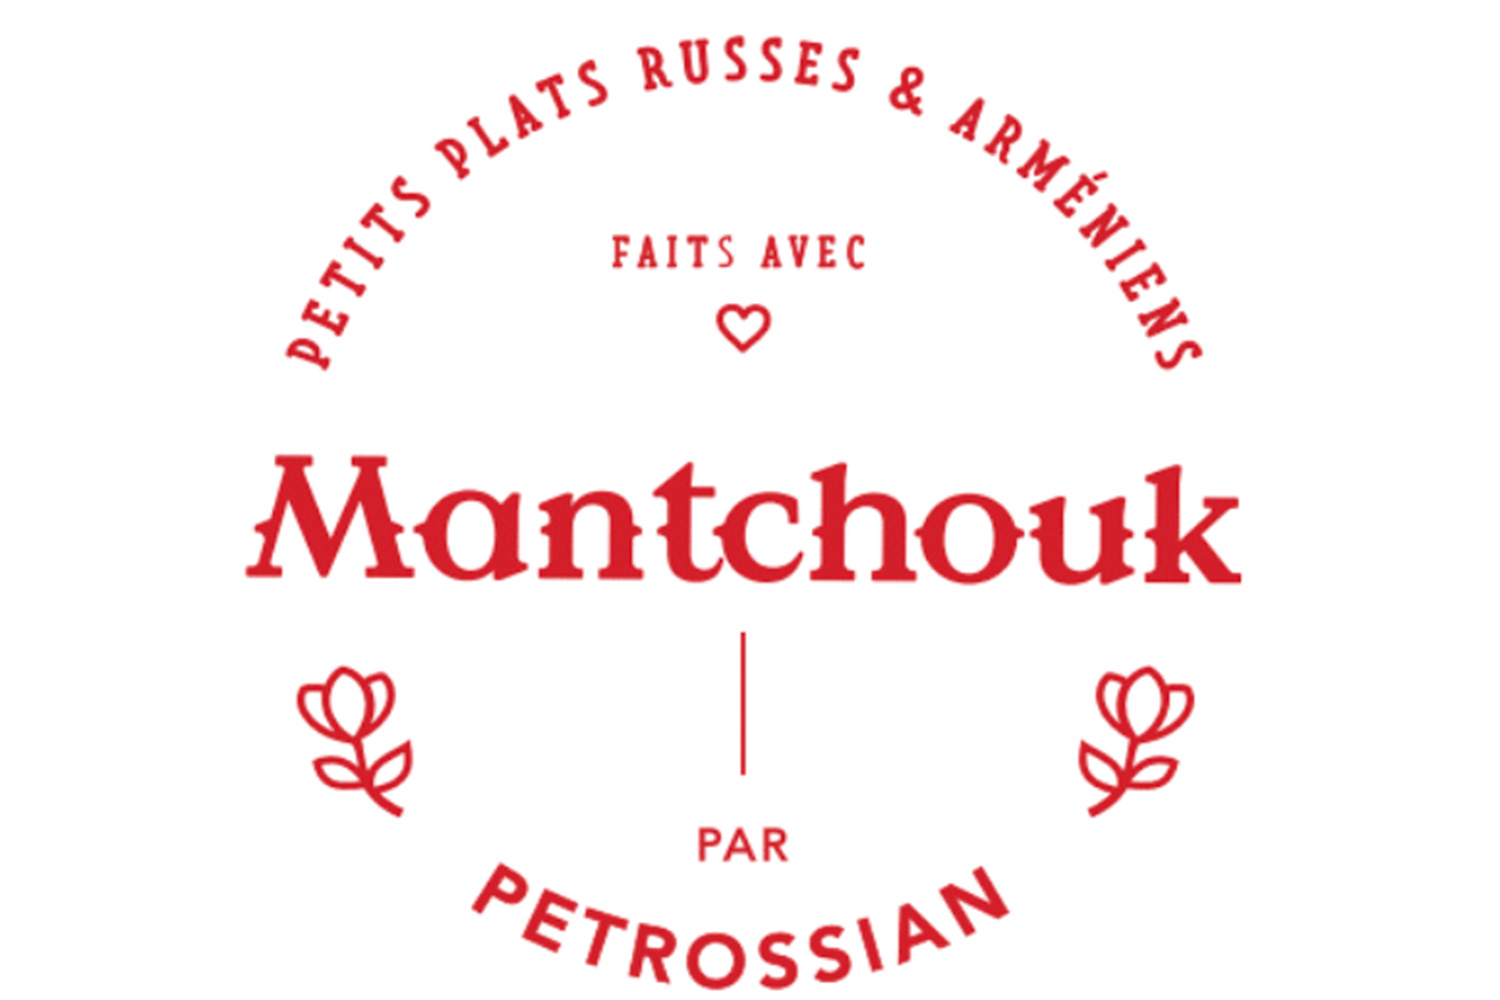 Mantchouk par Petrossian: Традиционная русско-армянская кухня в Париже